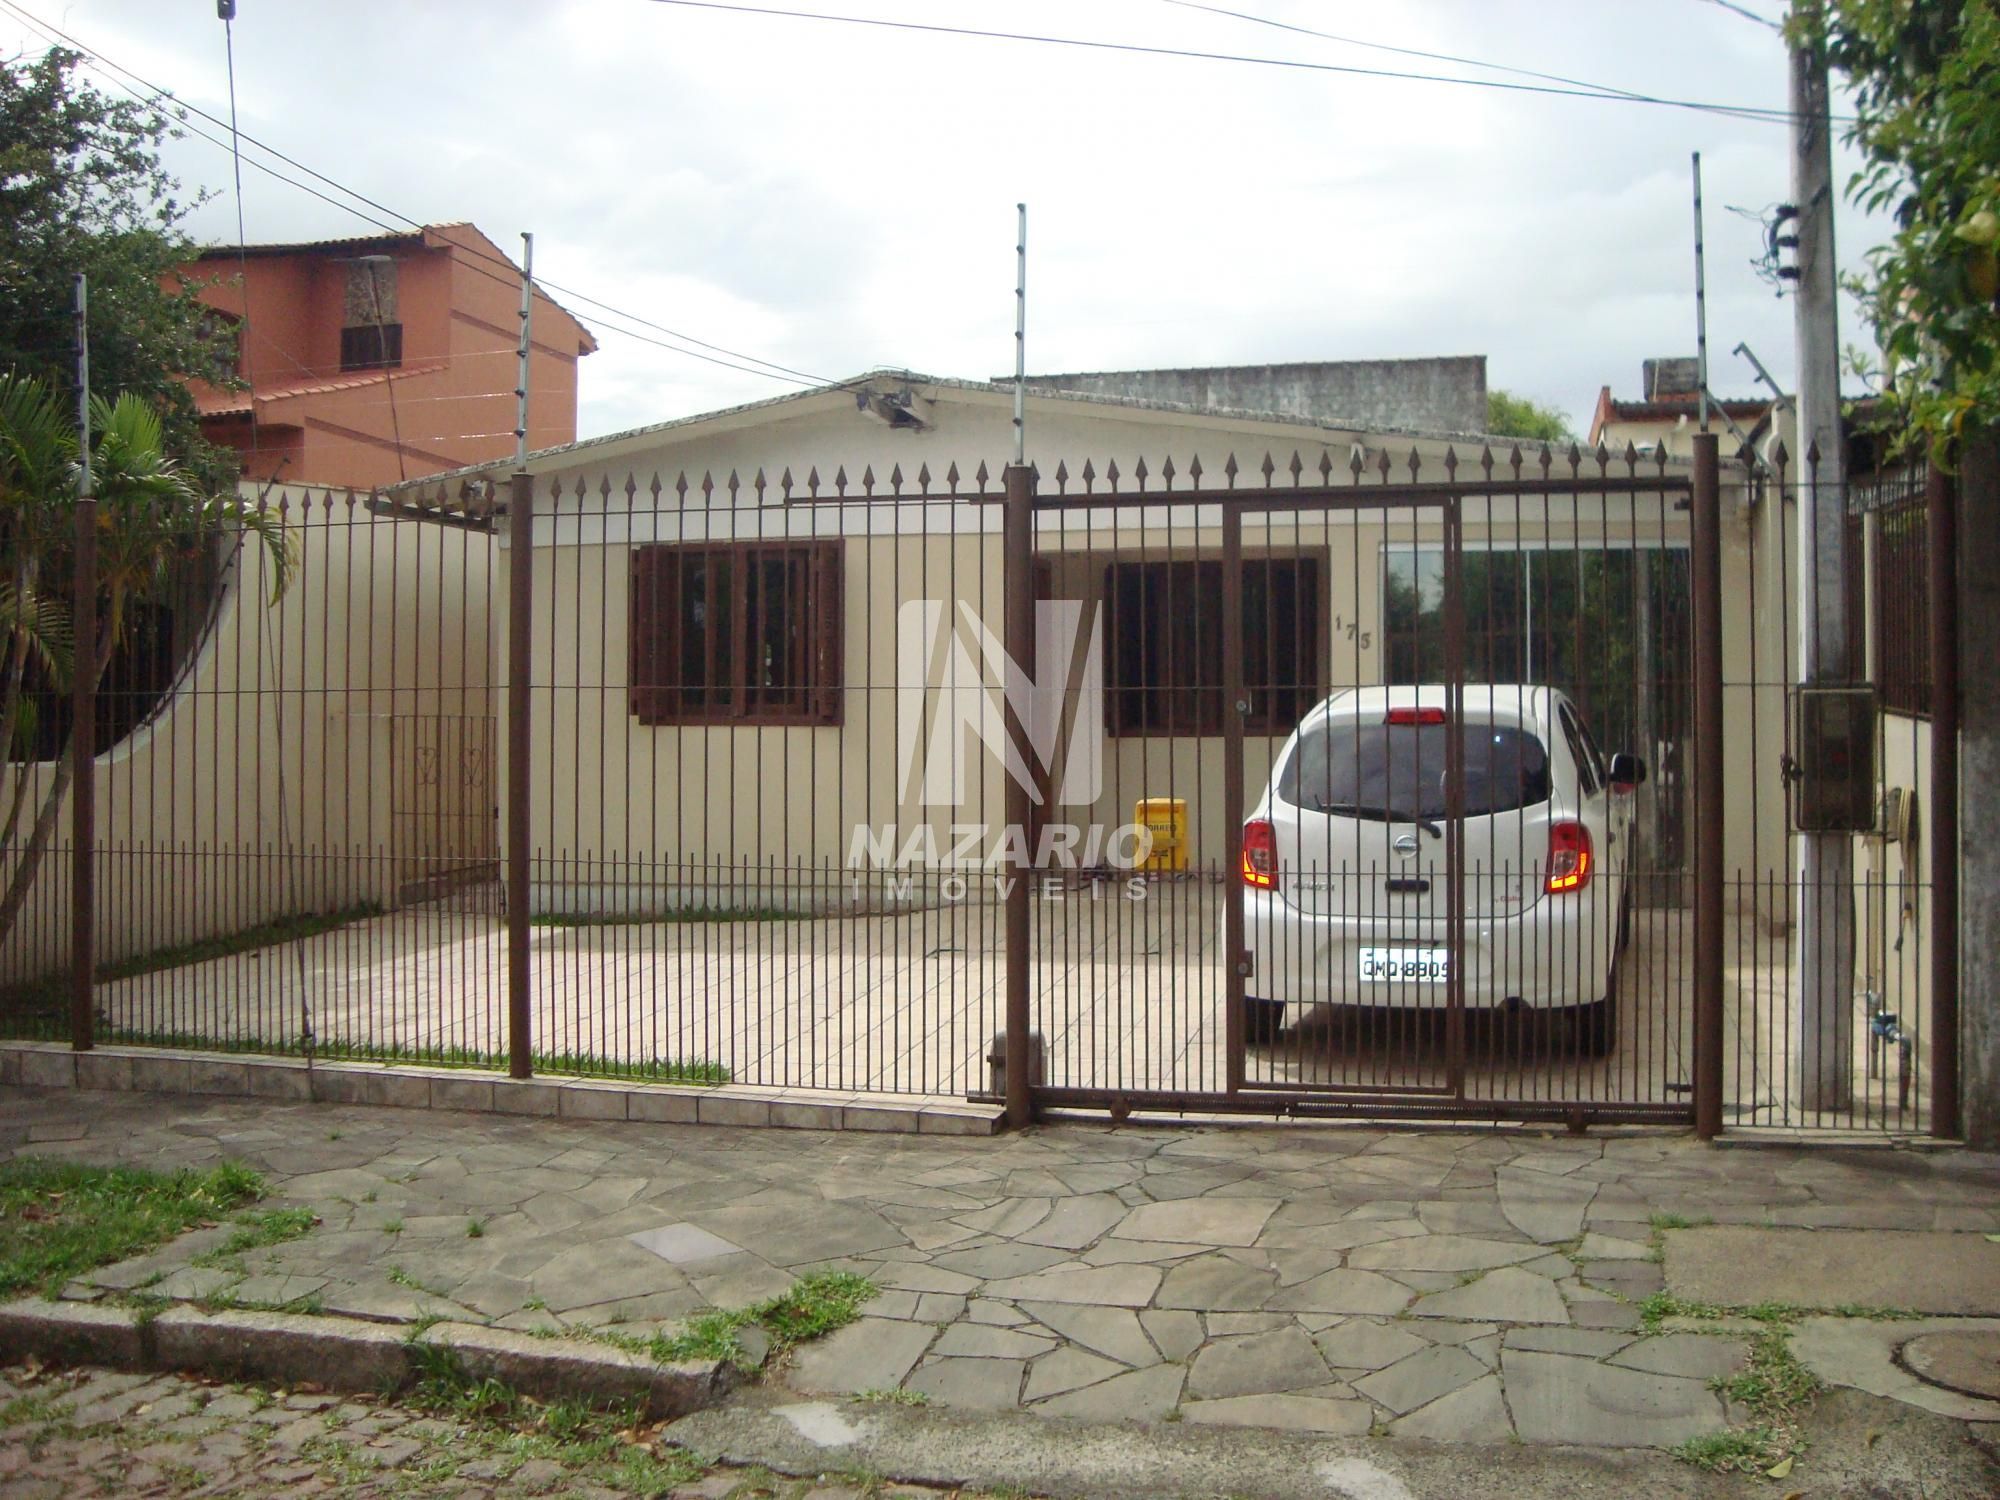 Casa  venda  no Parque Santa F - Porto Alegre, RS. Imveis